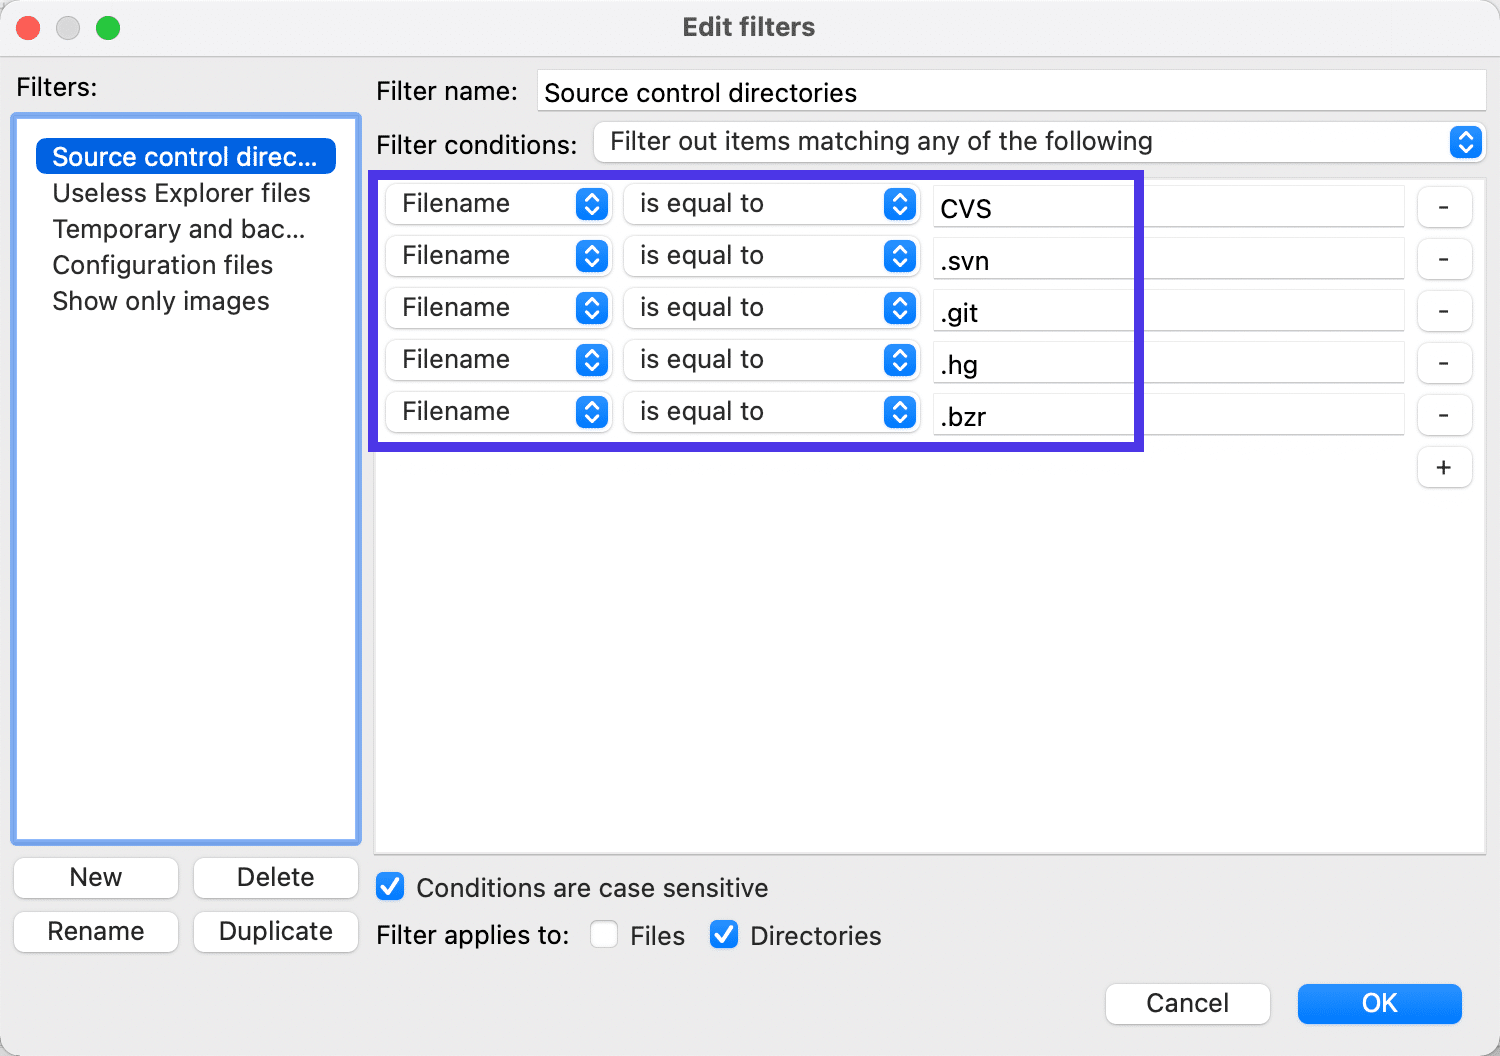 Potete restringere i filtri mostrando solo specifiche estensioni di file.